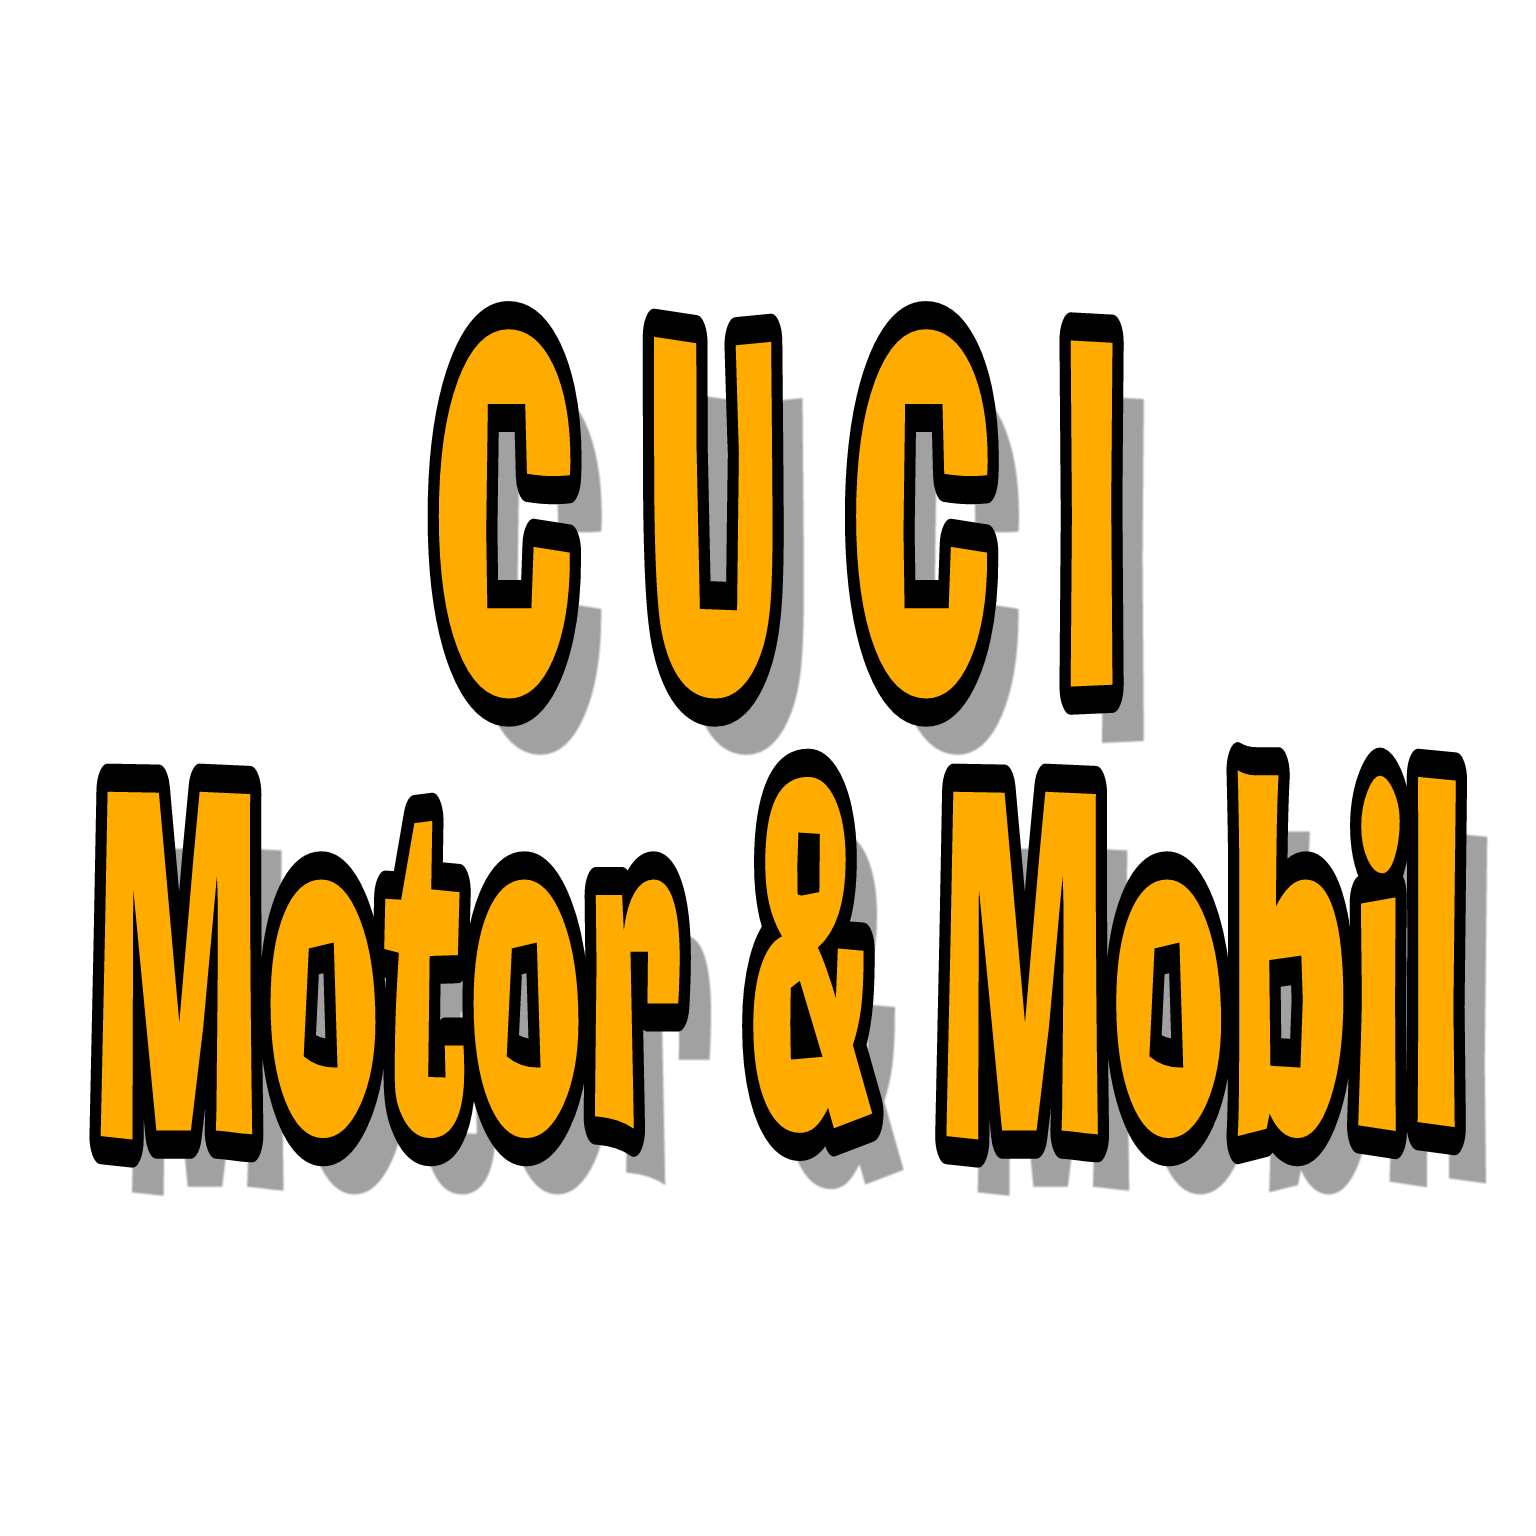 Cuci Motor & Mobil